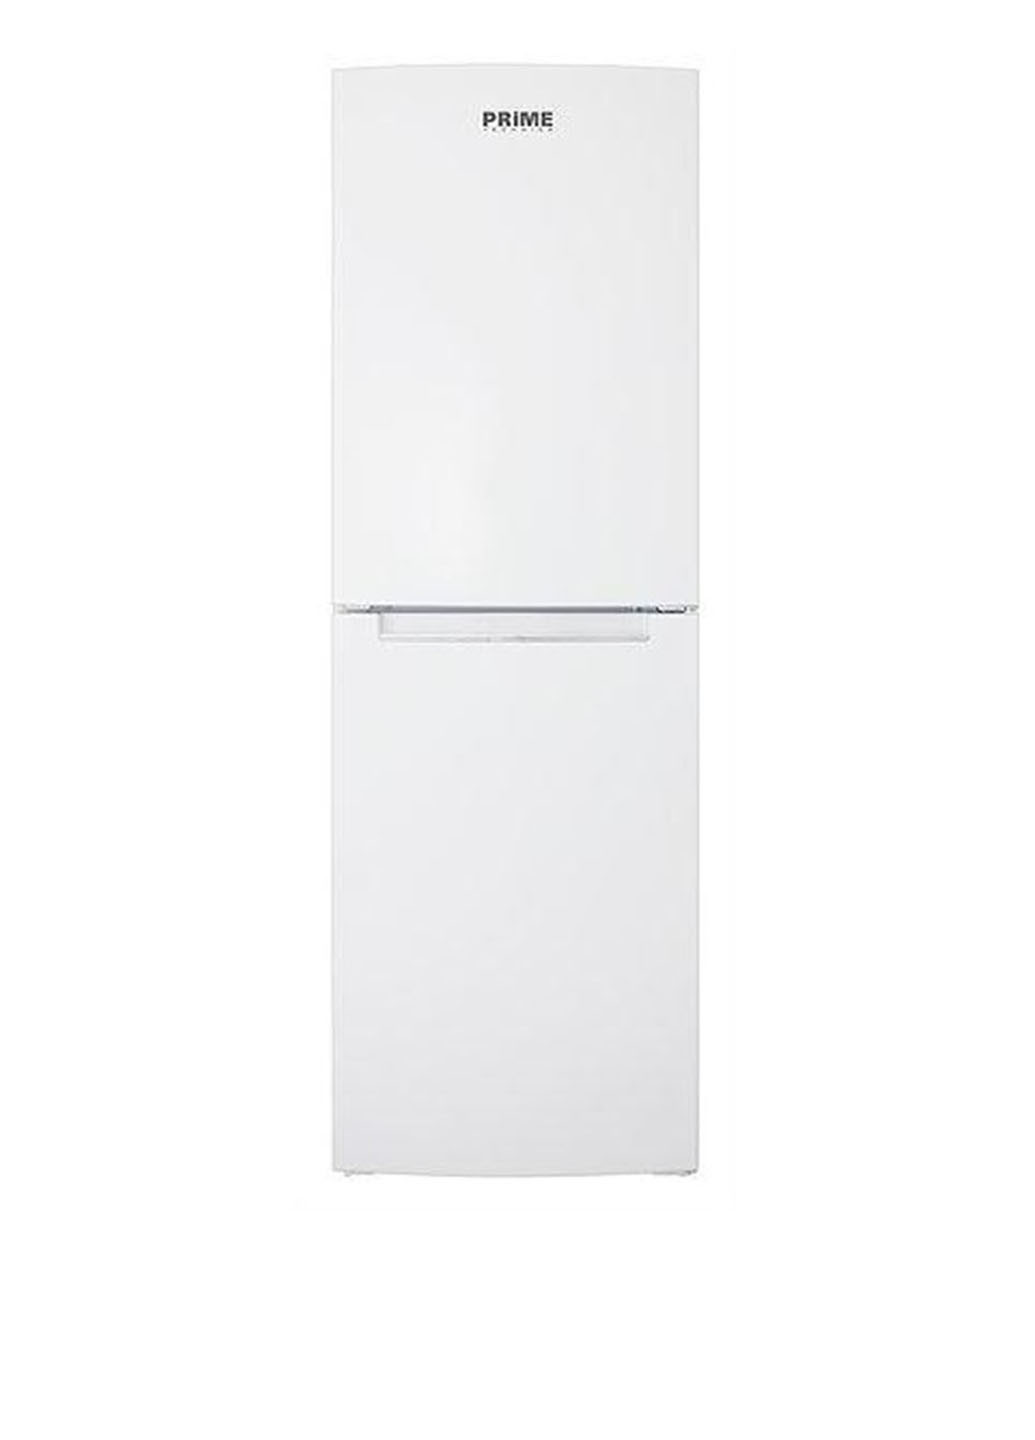 Холодильник RFS 1 701 M PRIME TECHNICS rfs 1701 m (129954211)